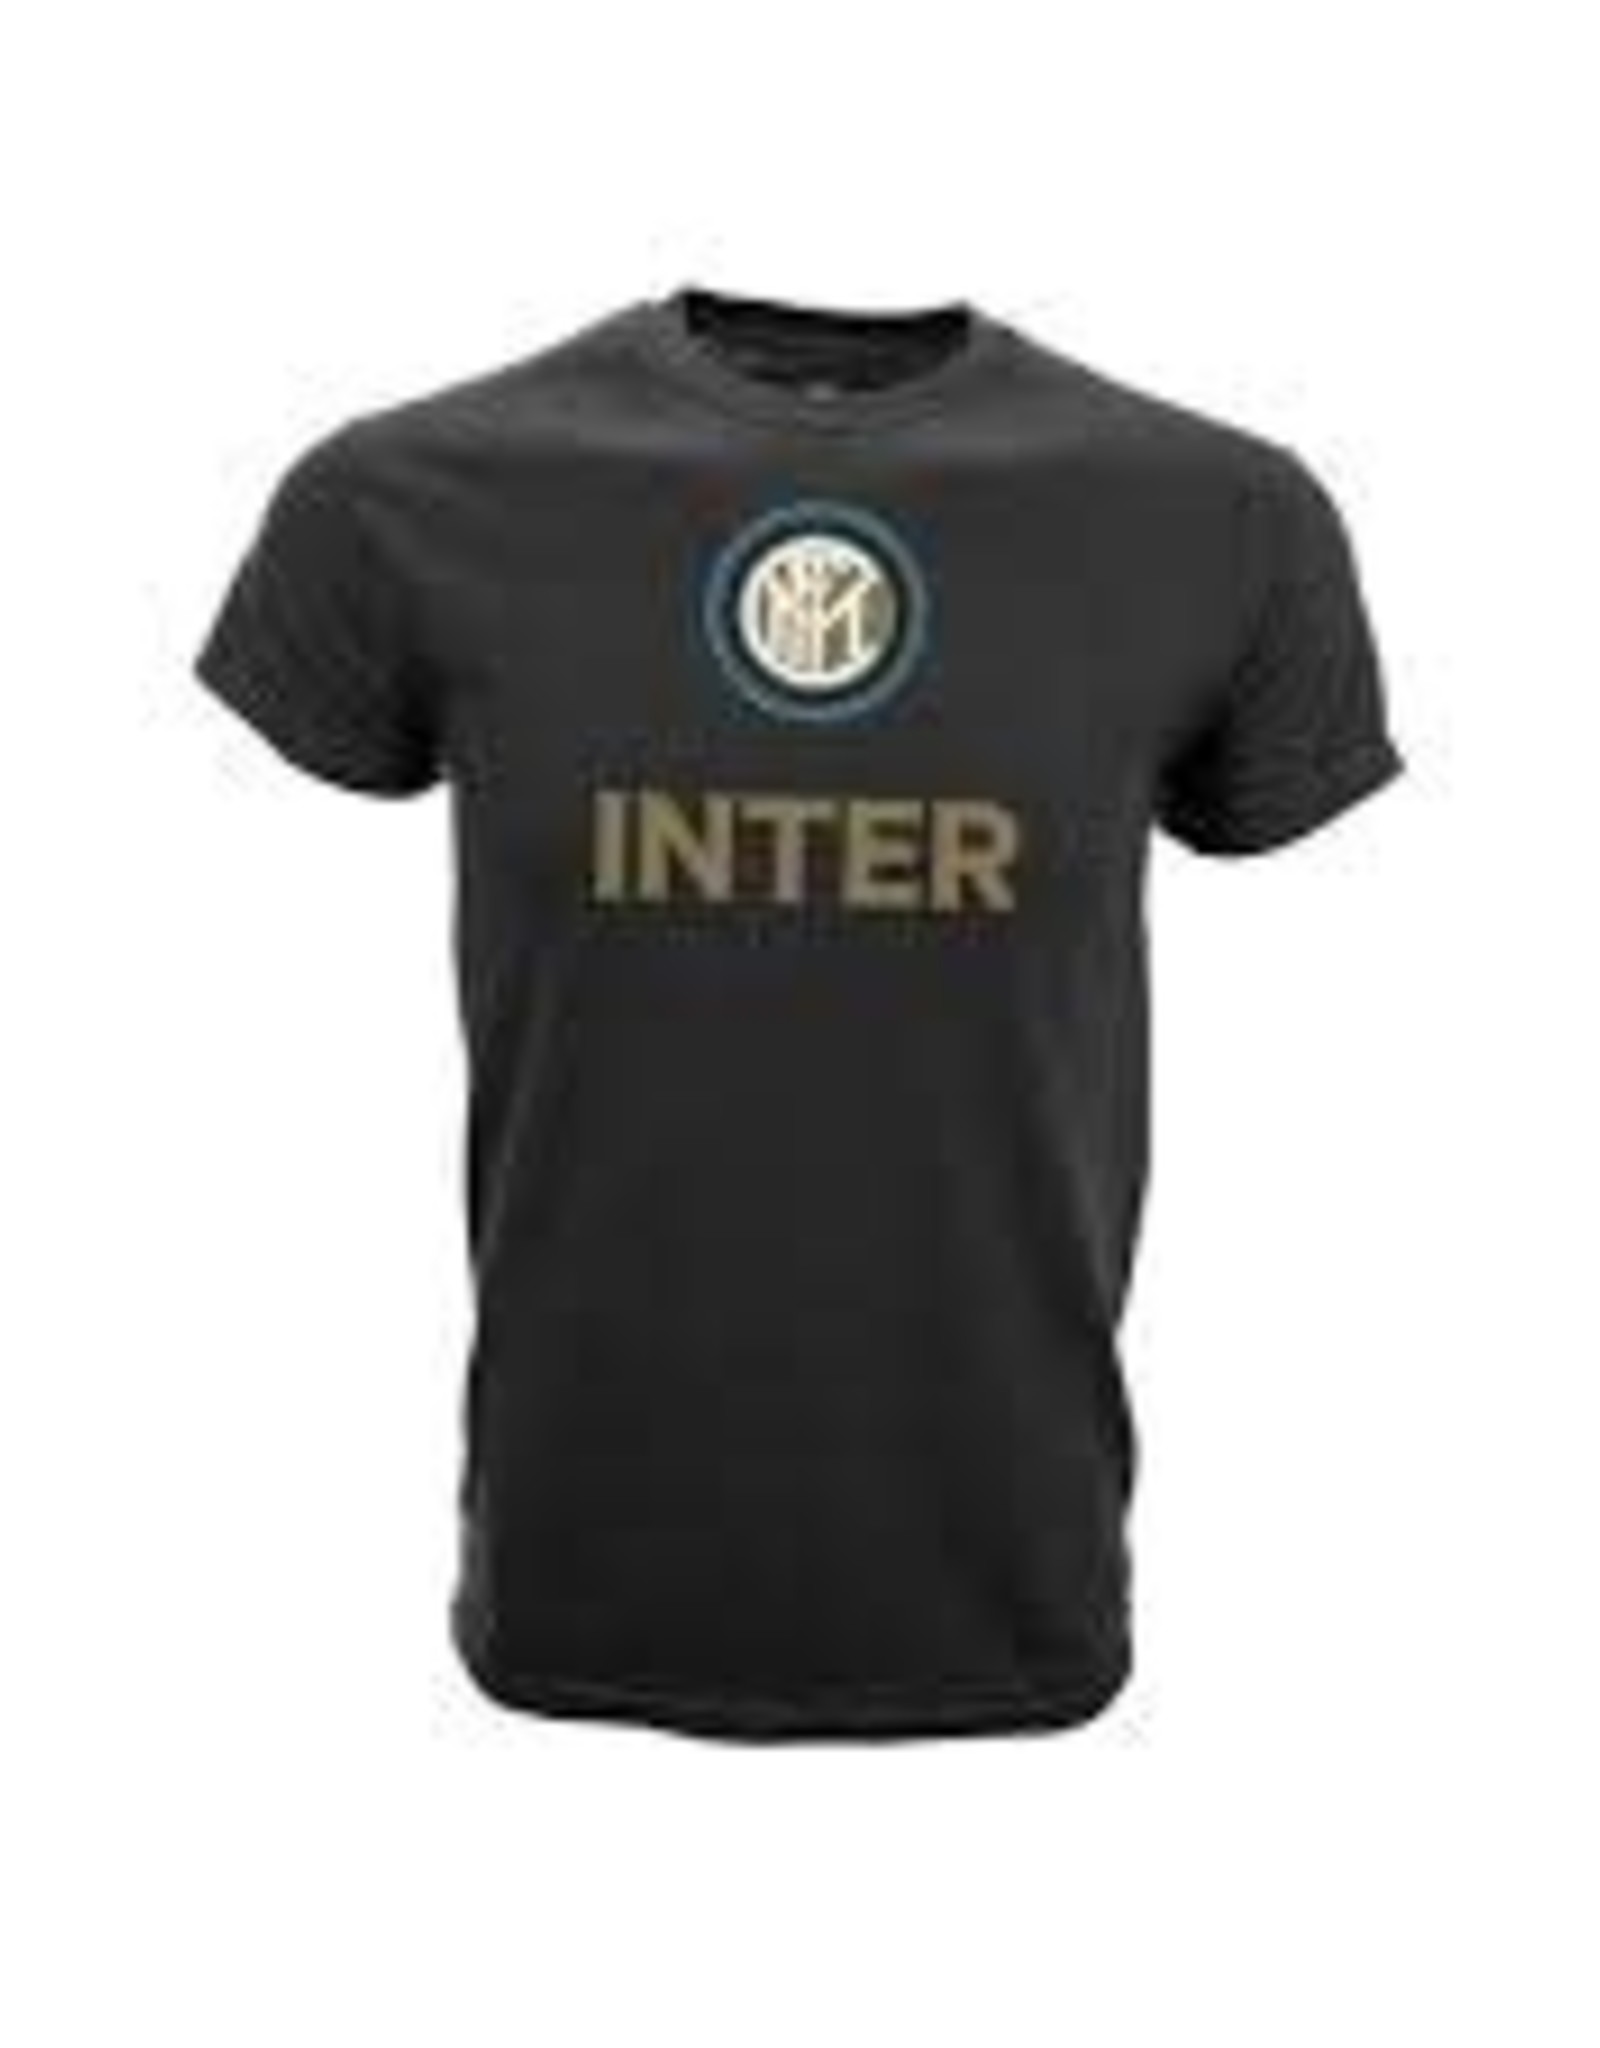 Inter Milan T Shirt